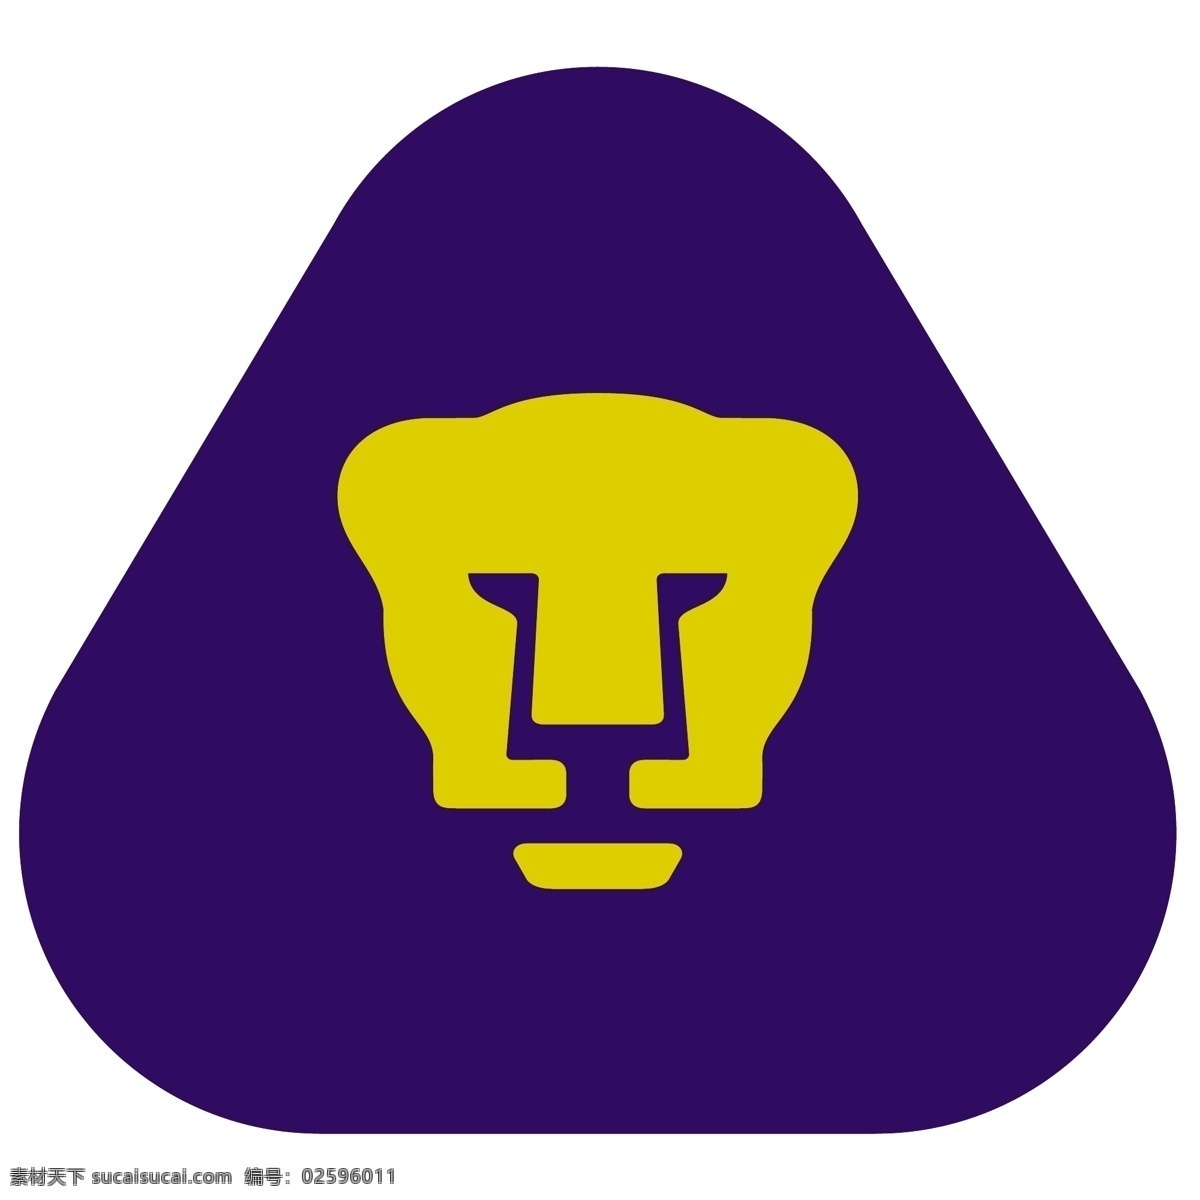 美洲狮 免费 标志 标识 psd源文件 logo设计